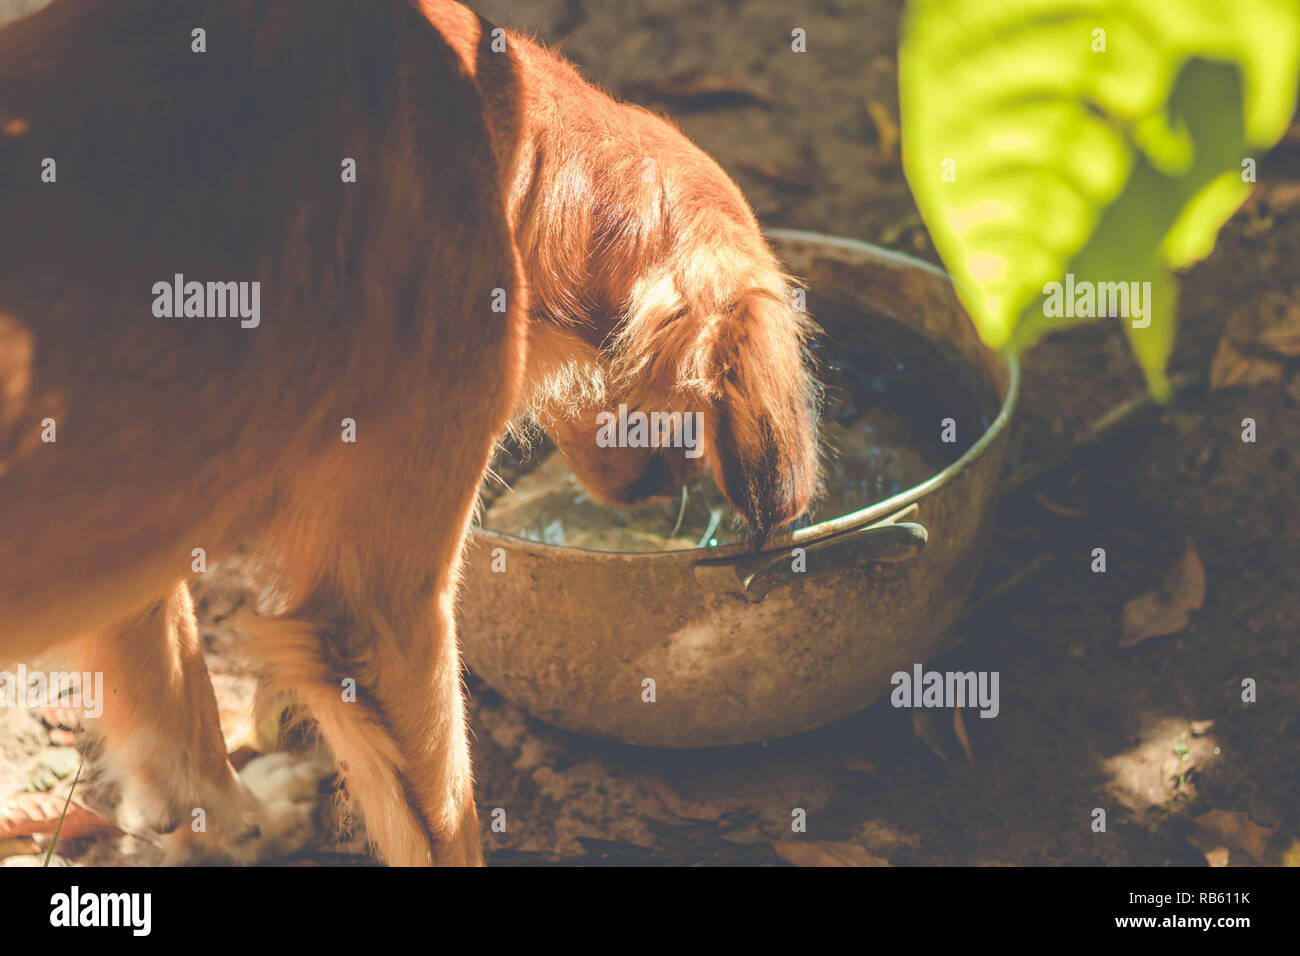 Durstigen hund Trinkwasser aus der Schüssel auf dem Bauernhof Stockfoto